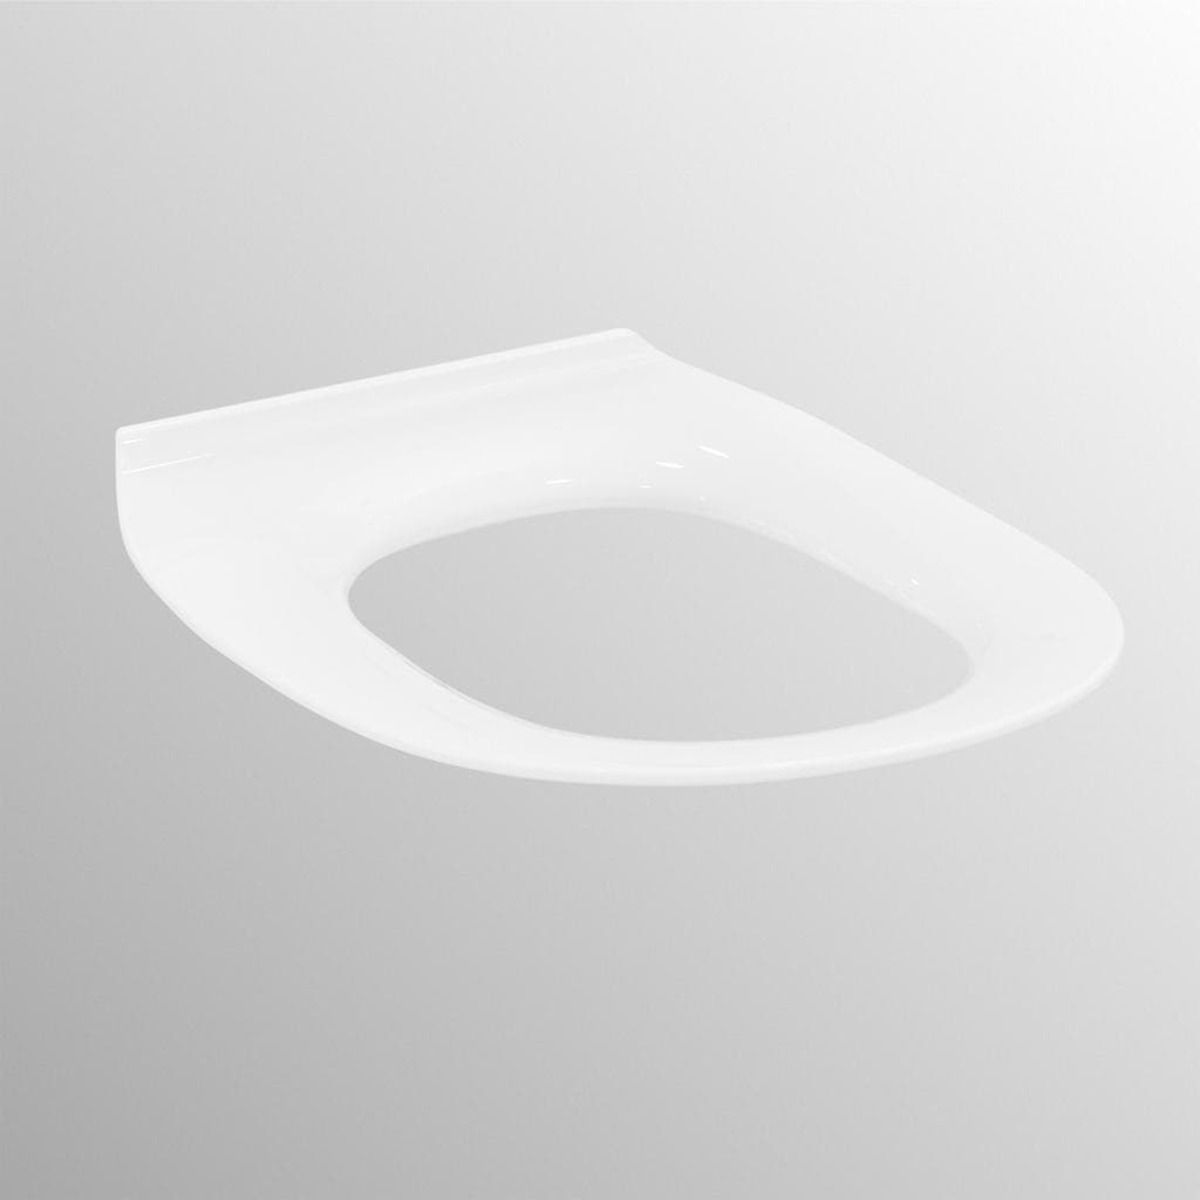 Wc prkénko Ideal Standard Contour 21 duroplast bílá S454501 - Siko - koupelny - kuchyně